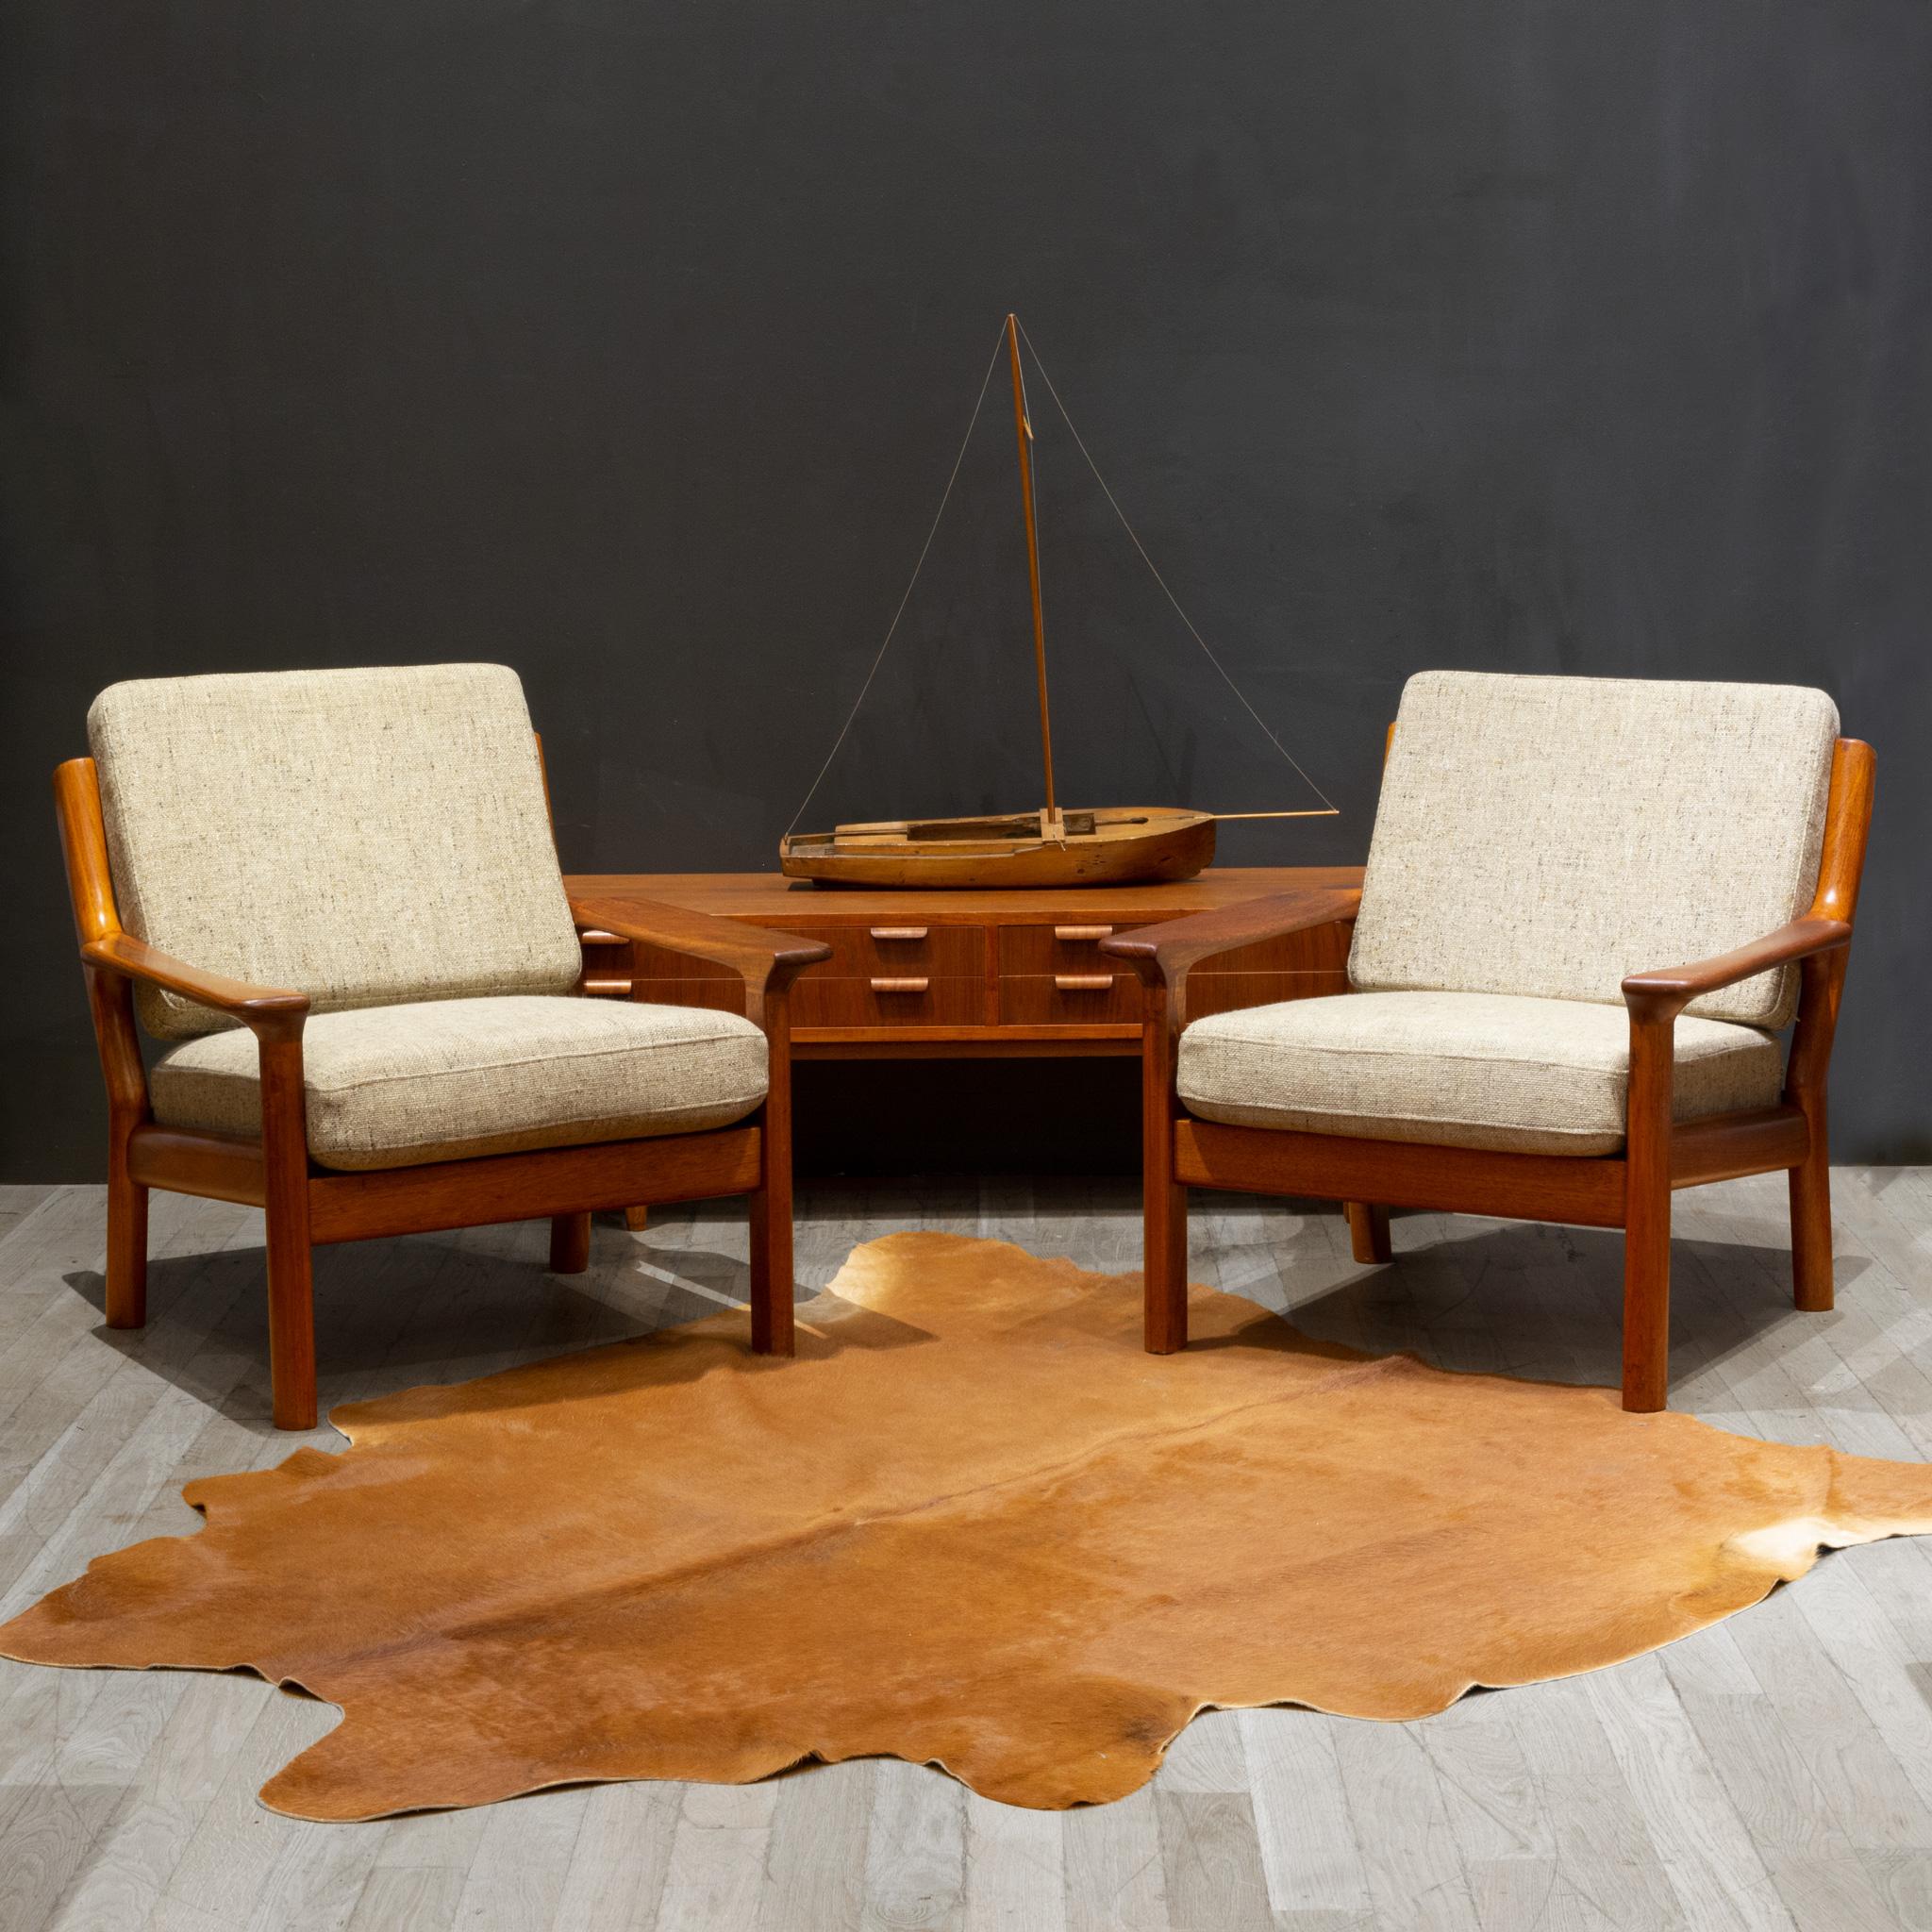 À PROPOS DE

Paire de chaises de salon Glostrup Mobelfabrik, Danemark, datant du milieu du siècle, avec des cadres organiques sculptés en teck massif. Tissu original. Les coussins d'assise ont été dotés d'une nouvelle mousse. Labels d'origine sur